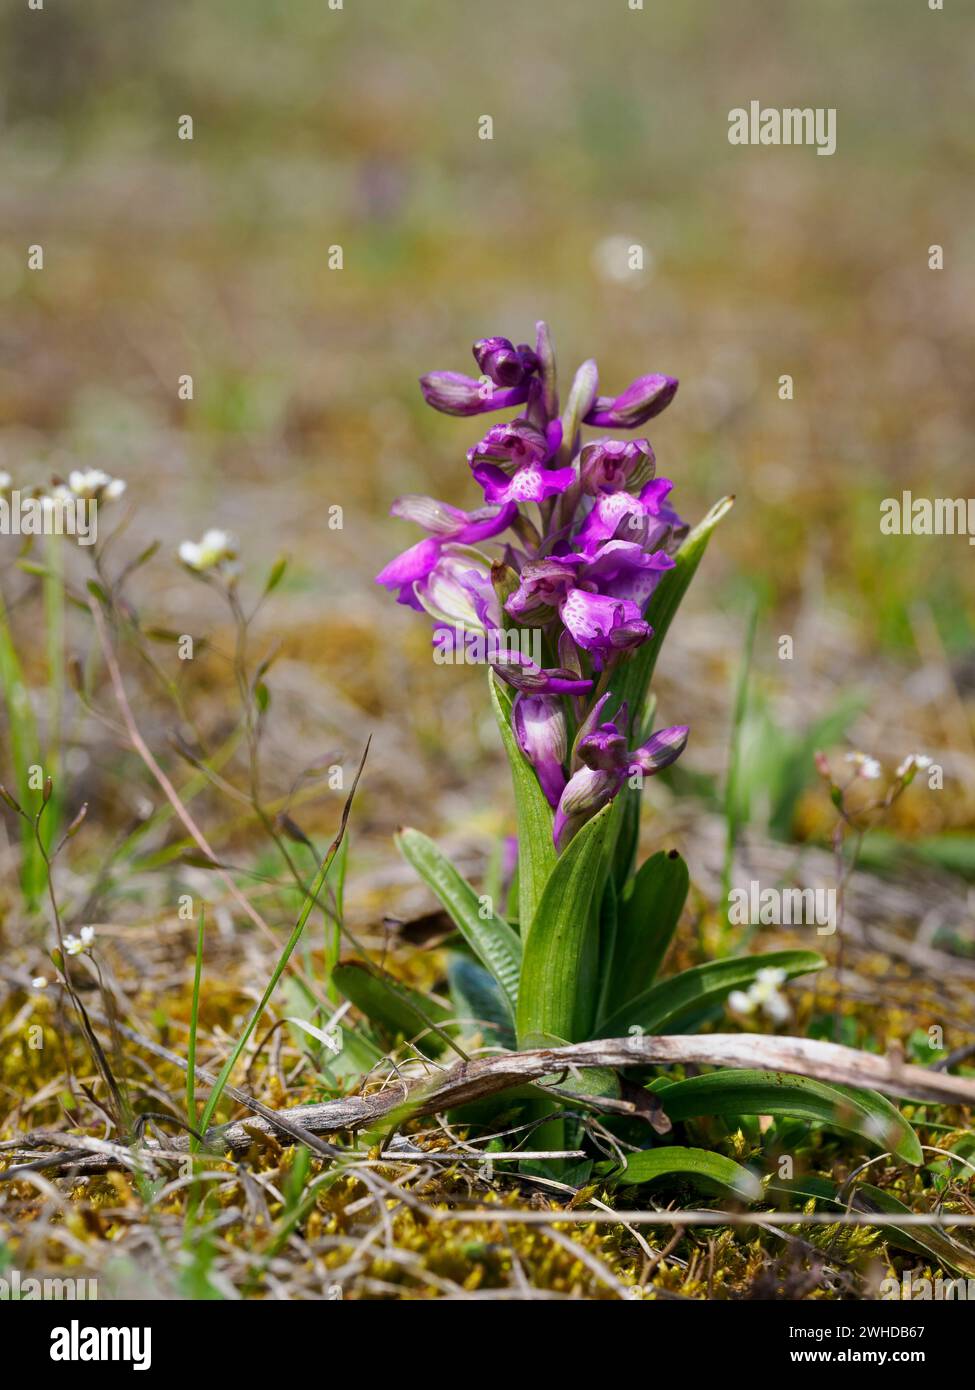 green-veined orchid, Anacamptis morio, Orchis morio Stock Photo